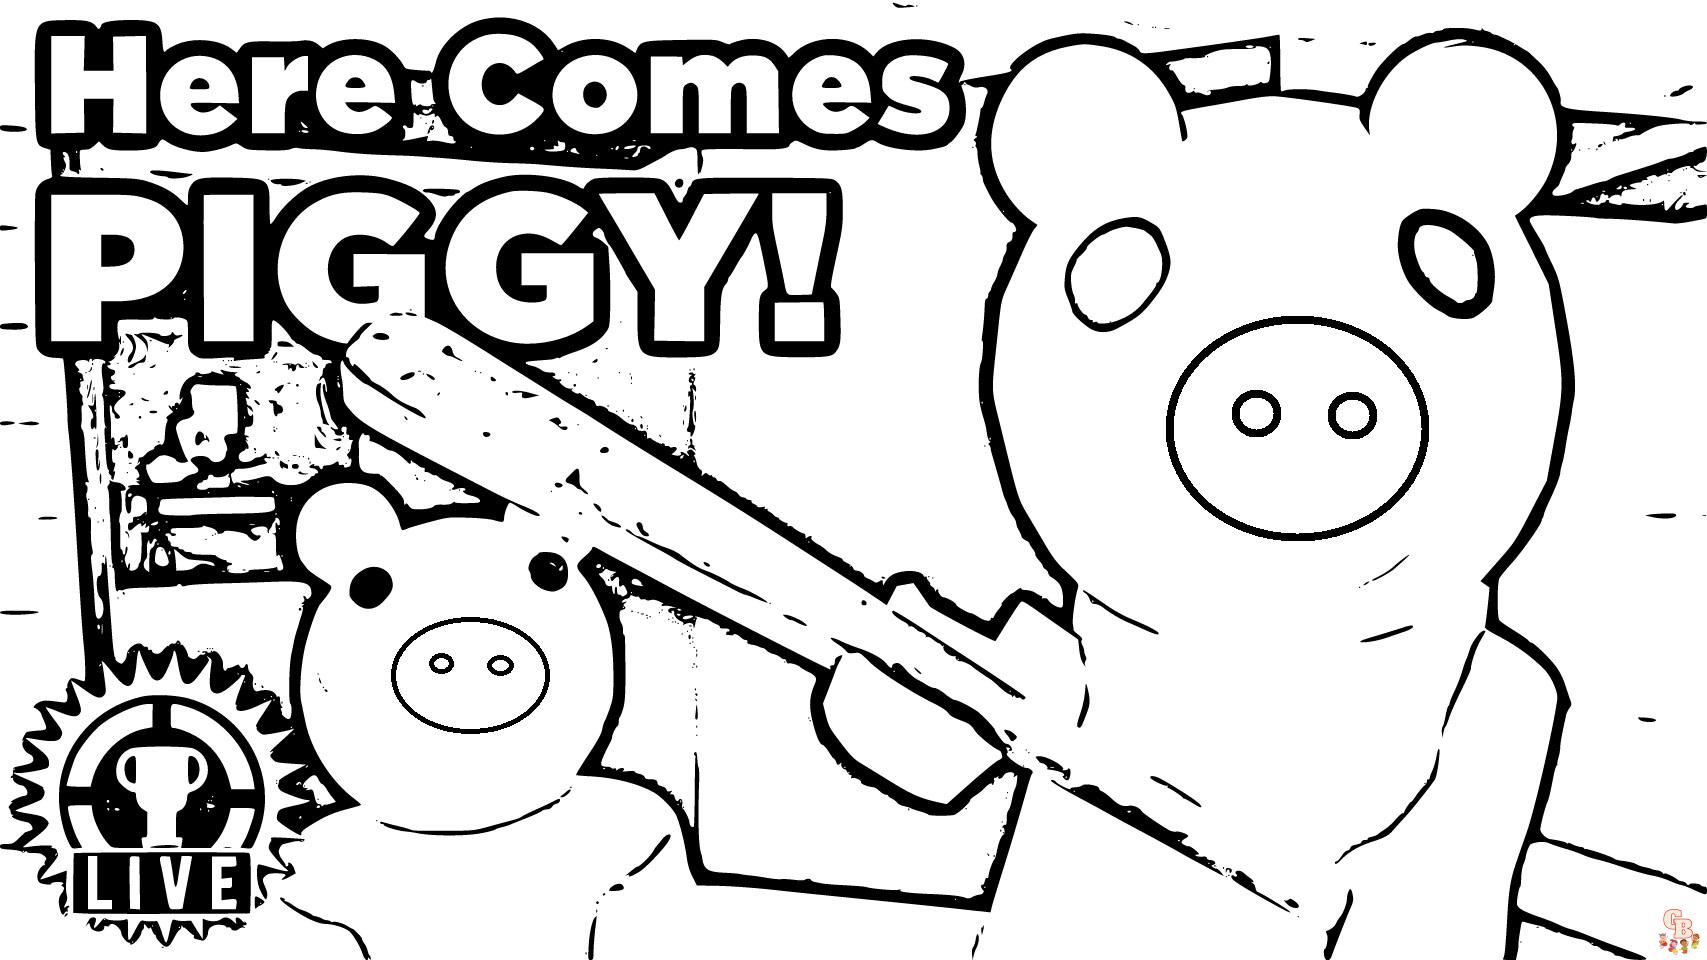 Descubra diversão e emoção com Piggy Roblox Coloring Pages